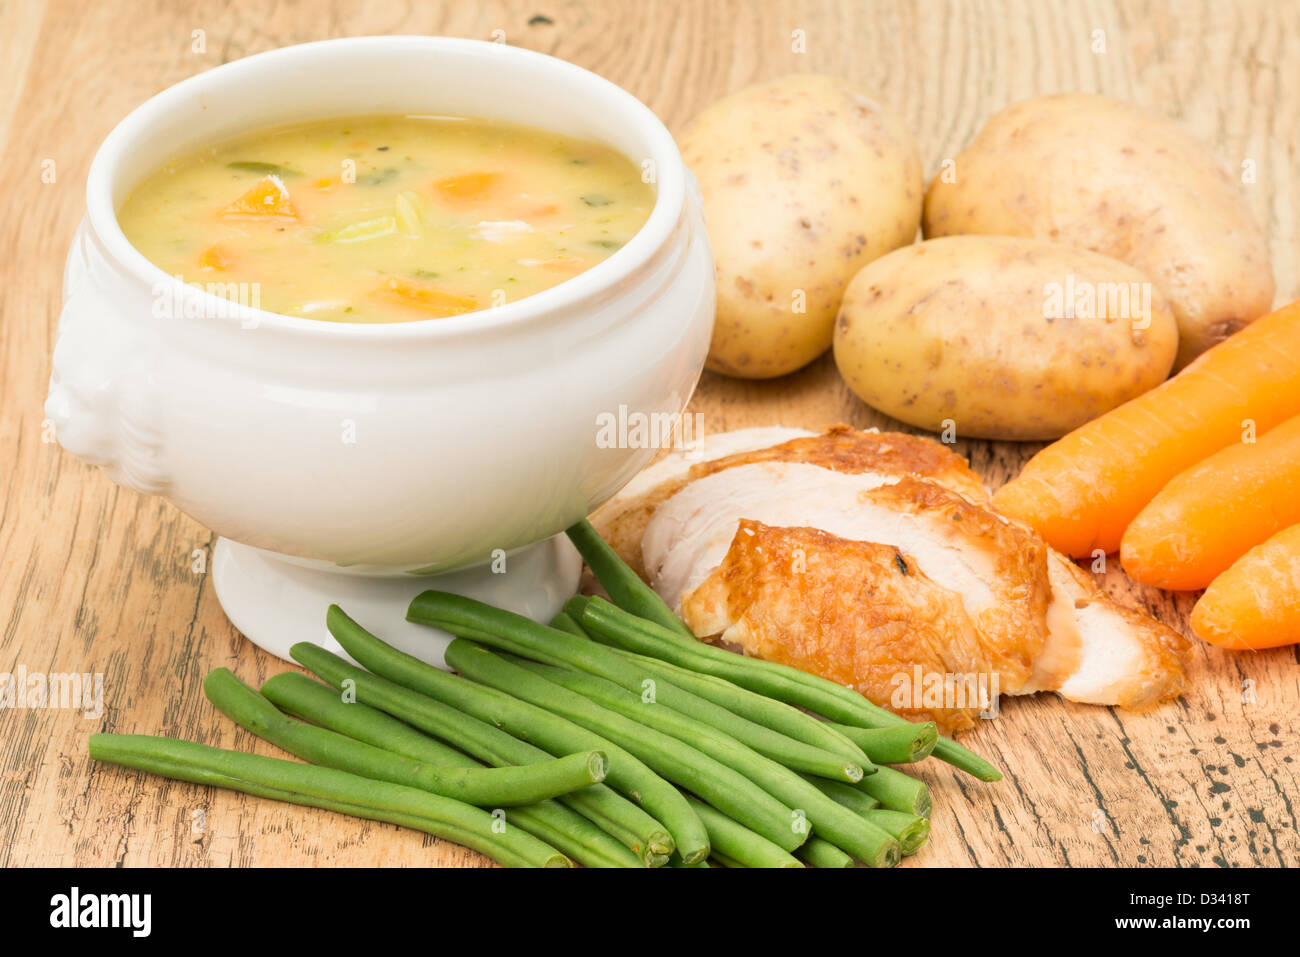 Il pollo e la minestra di verdura con alcuni ingredienti, carote, patate, fagioli verdi e le fette di pollo Foto Stock